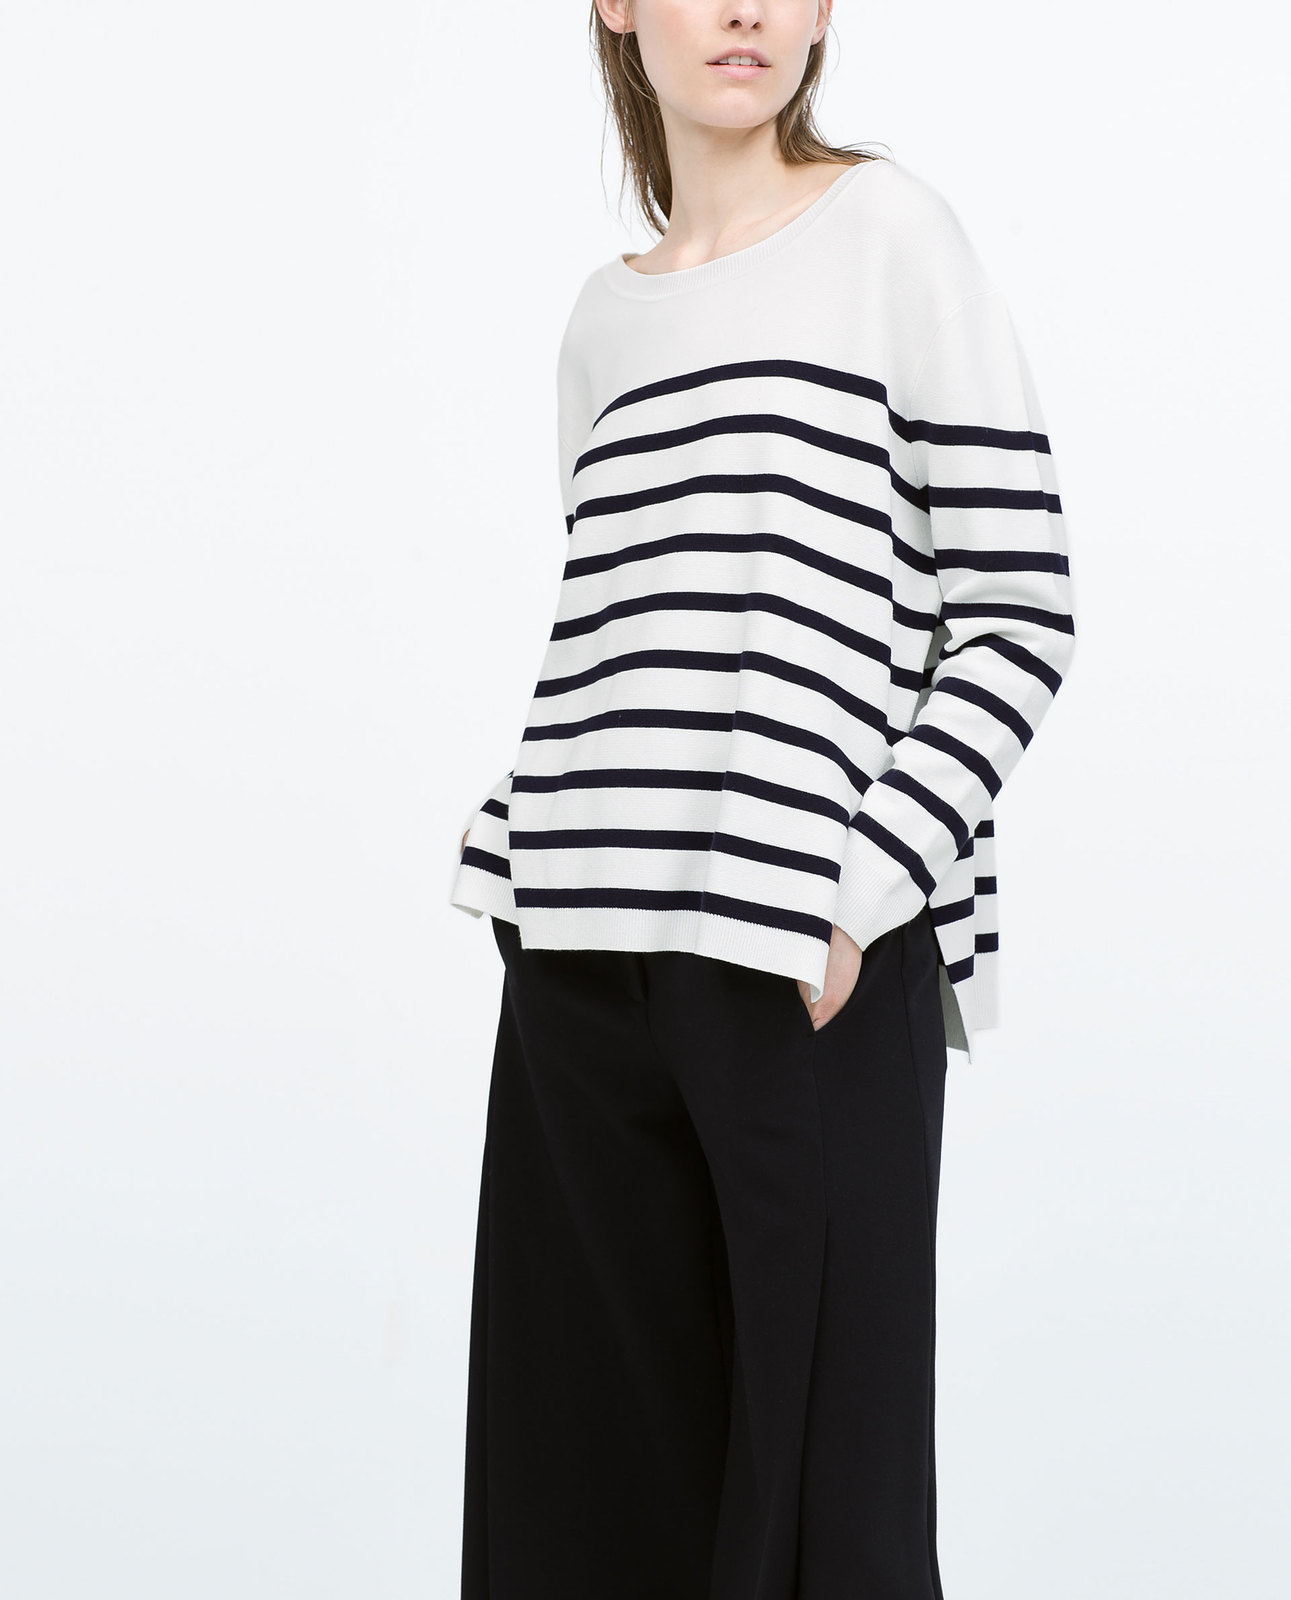 Zara tengerészcsíkos fekete-fehér pulóver 2015 fotója